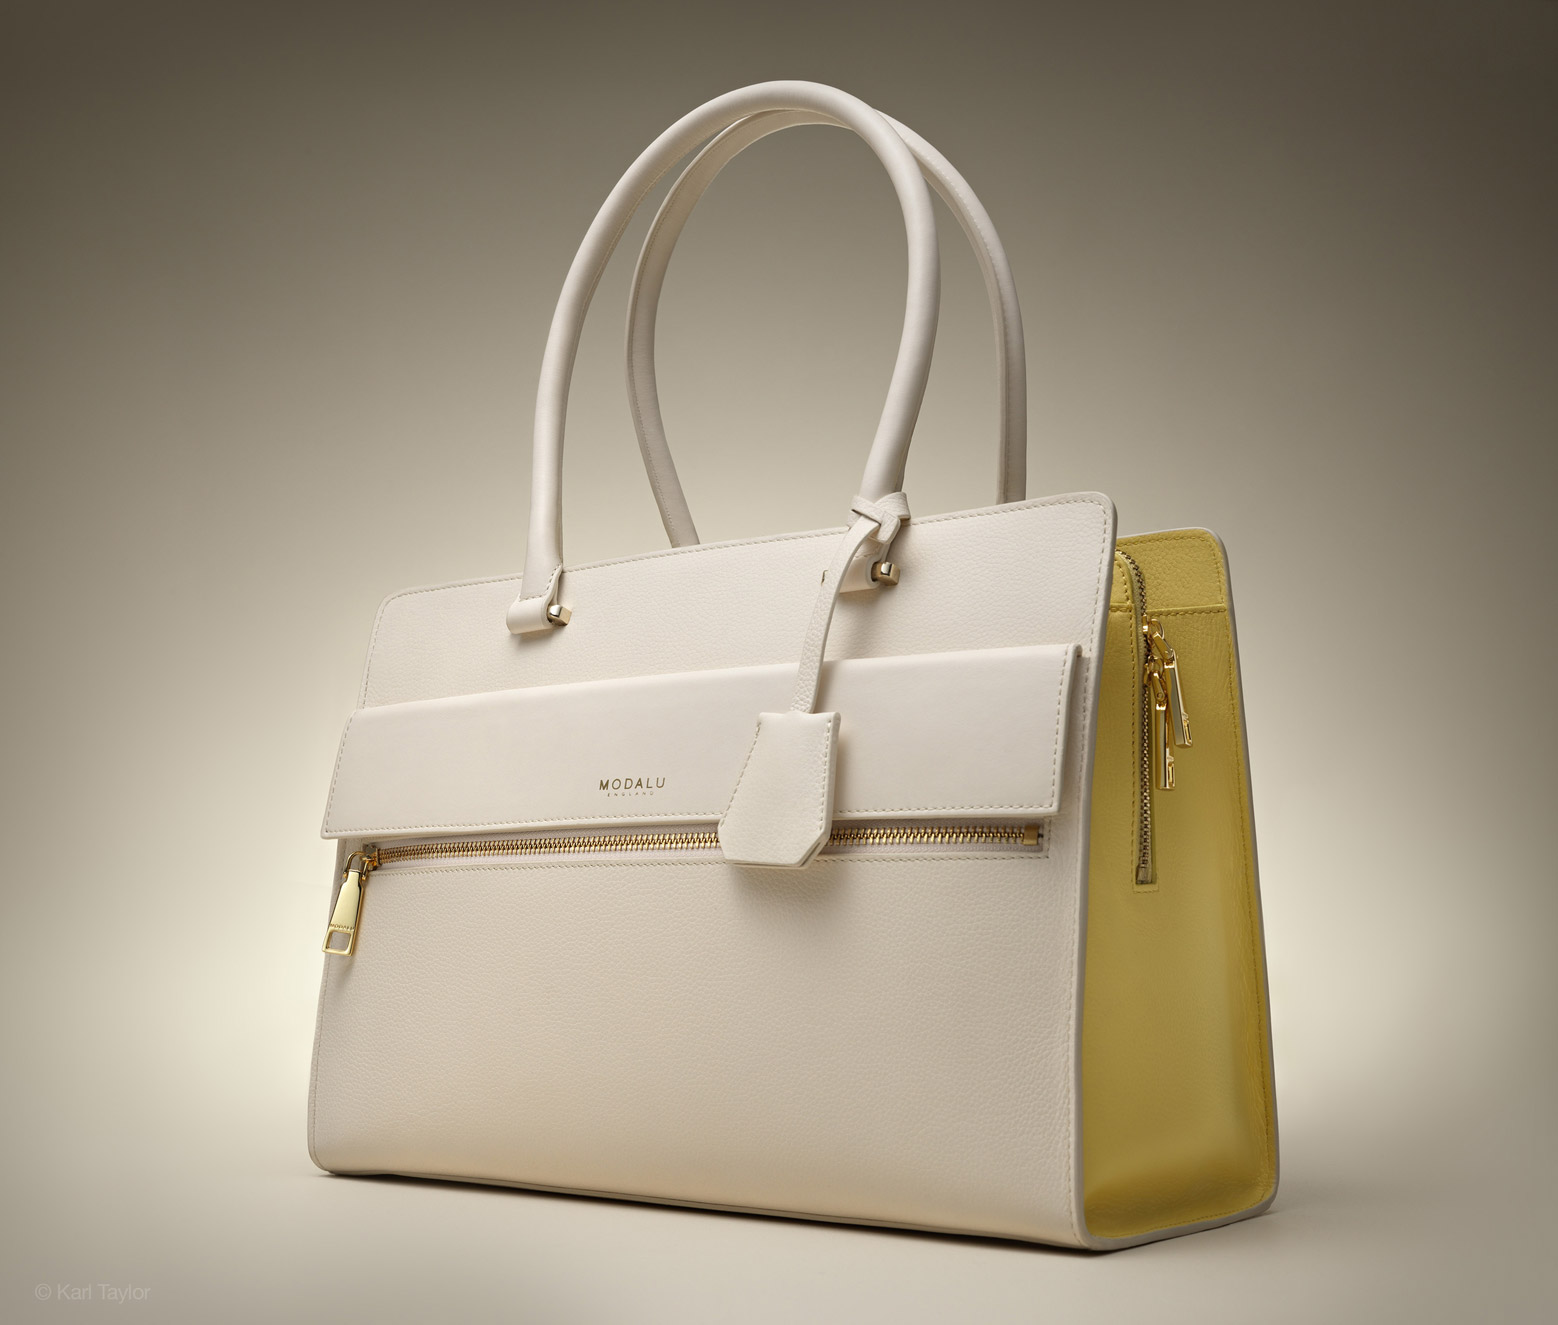 Handbag product photo by Karl Taylor